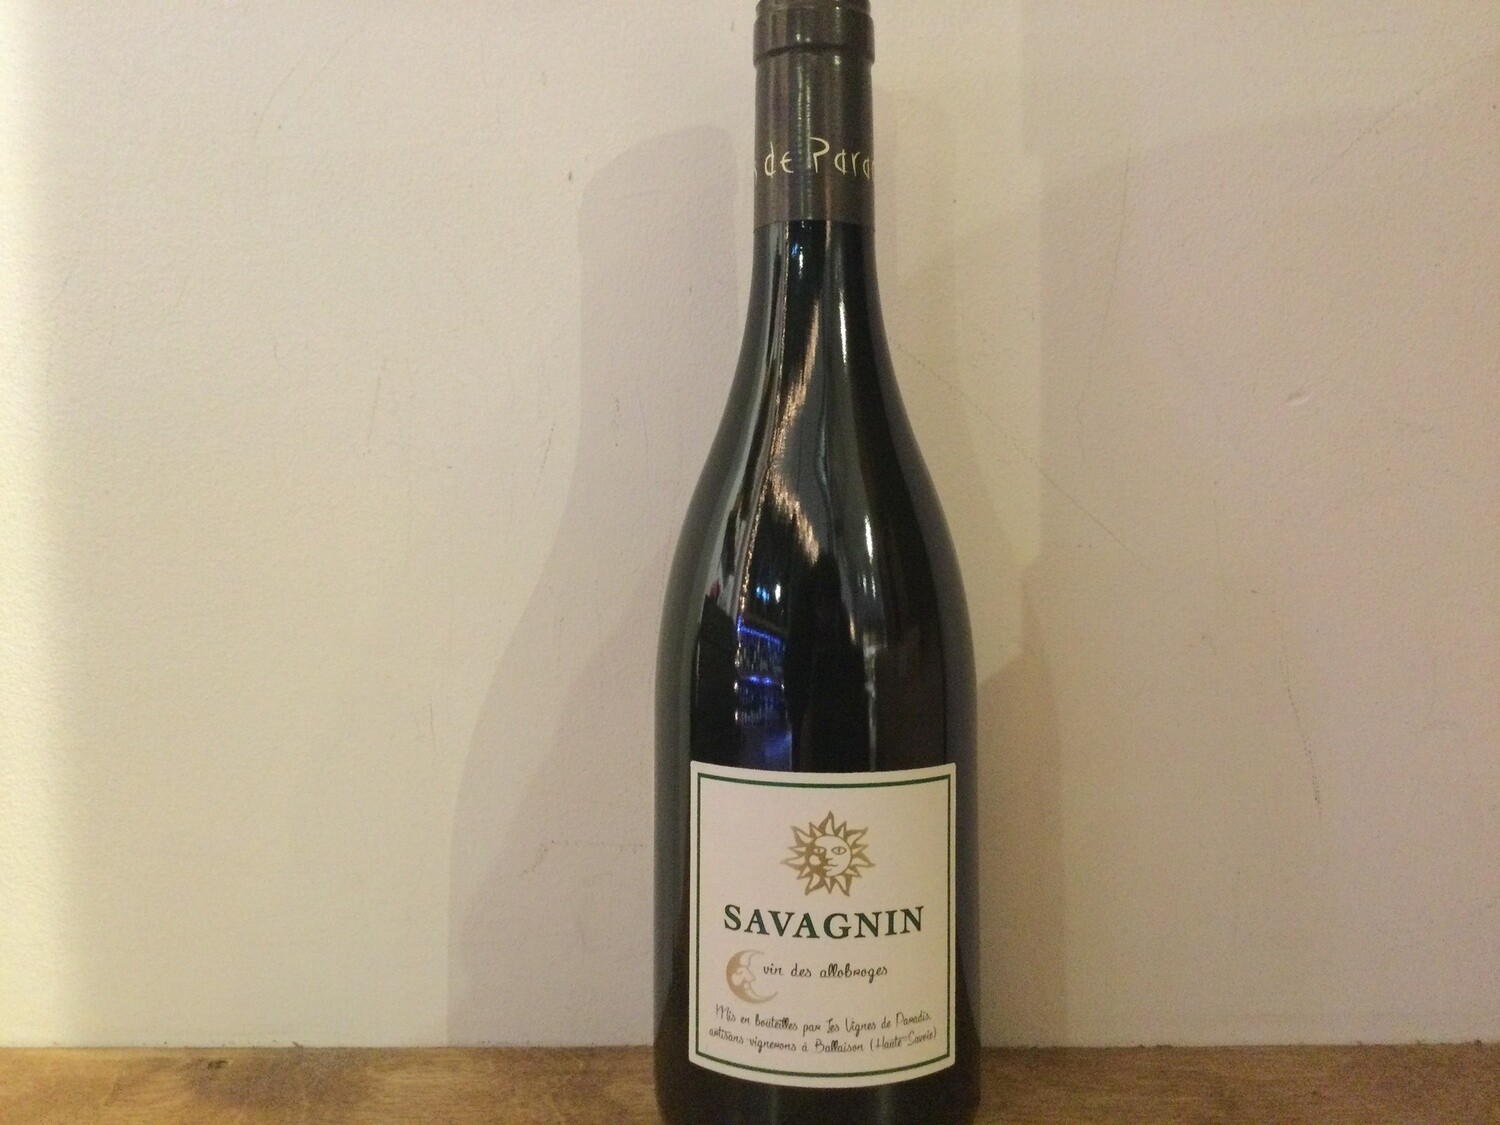 Les Vigne de Paradis, Savagnin from Vin des Allobroges, Haut-Savoie, France 2020